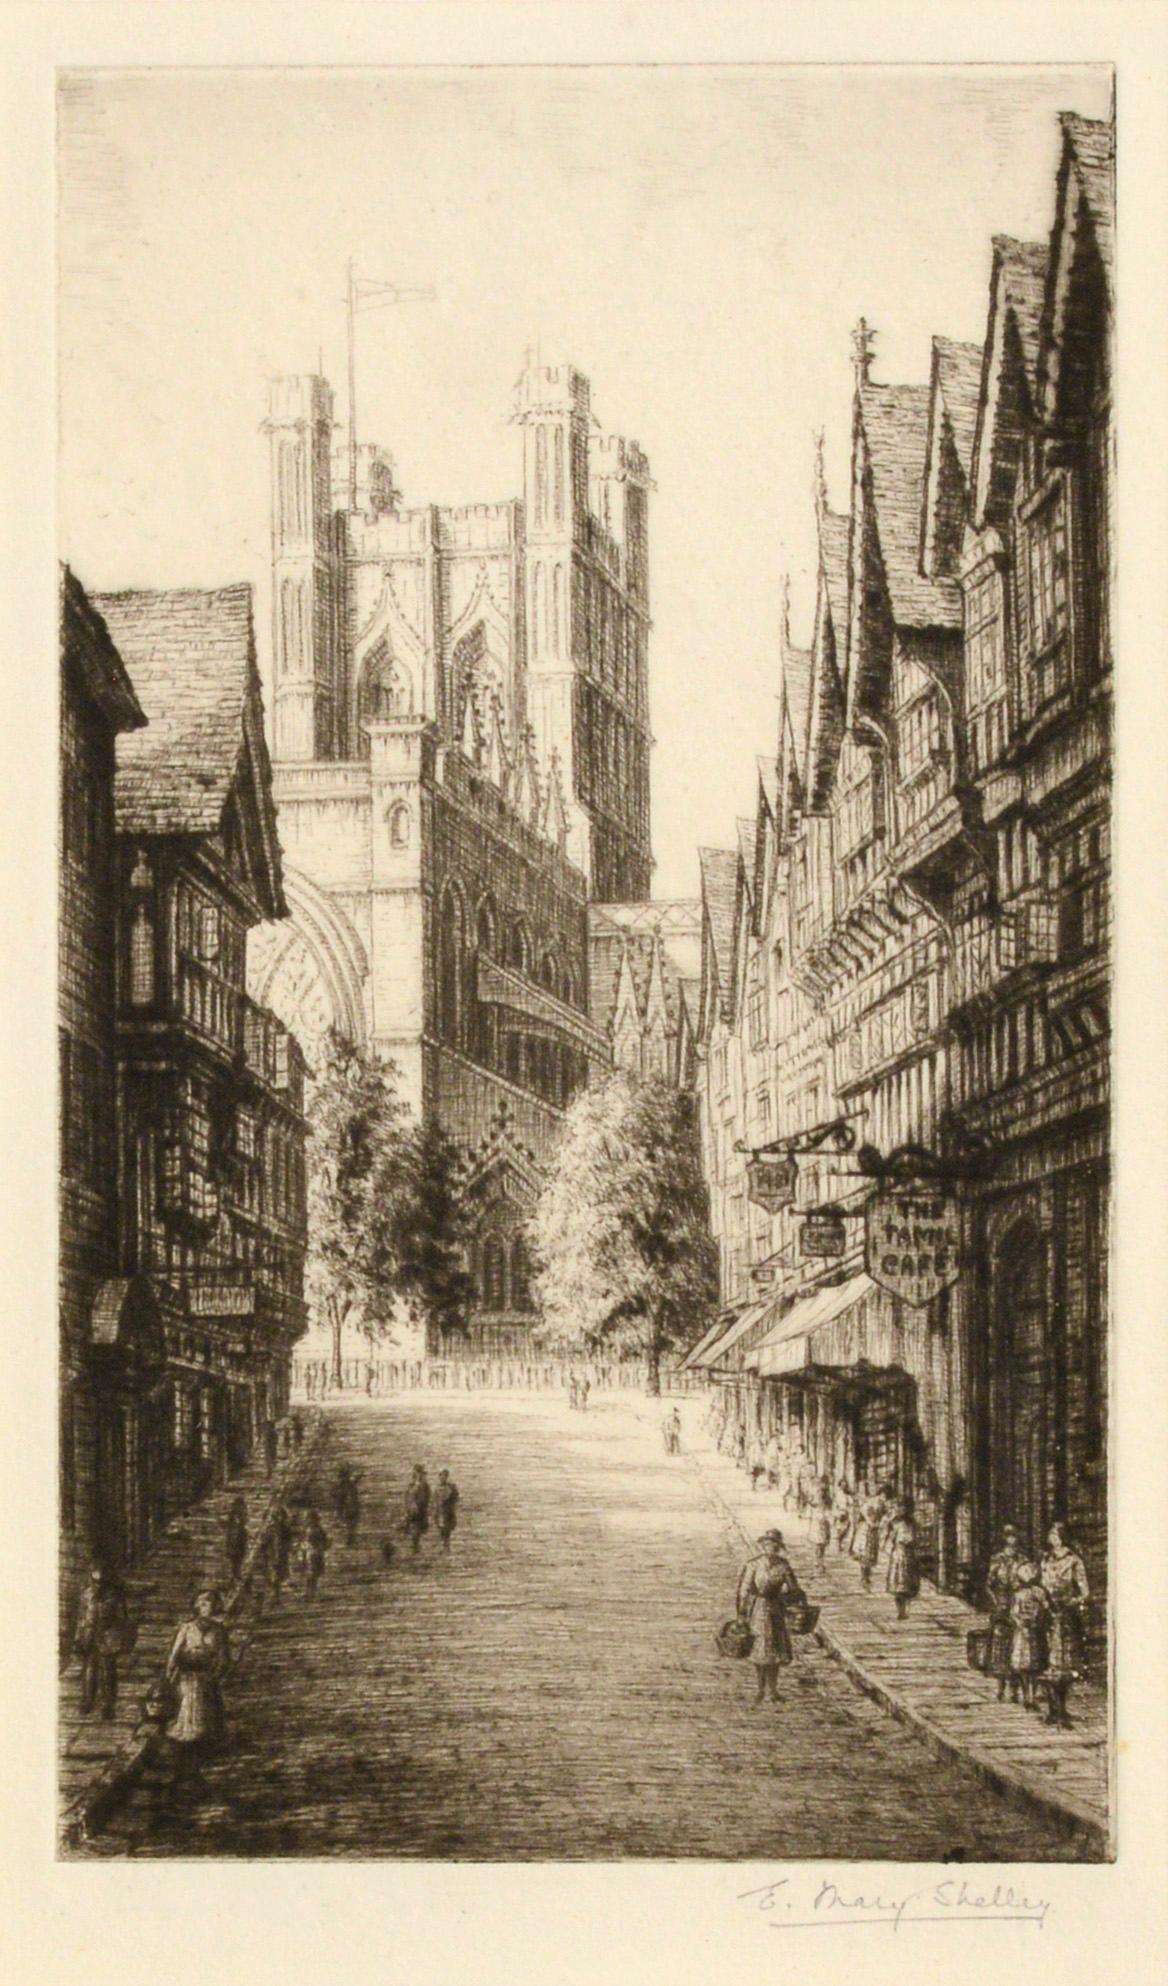 Scène de rue britannique du début du 20e siècle - Gravure figurative de paysage des années 1920 - Print de E. Mary Shelley